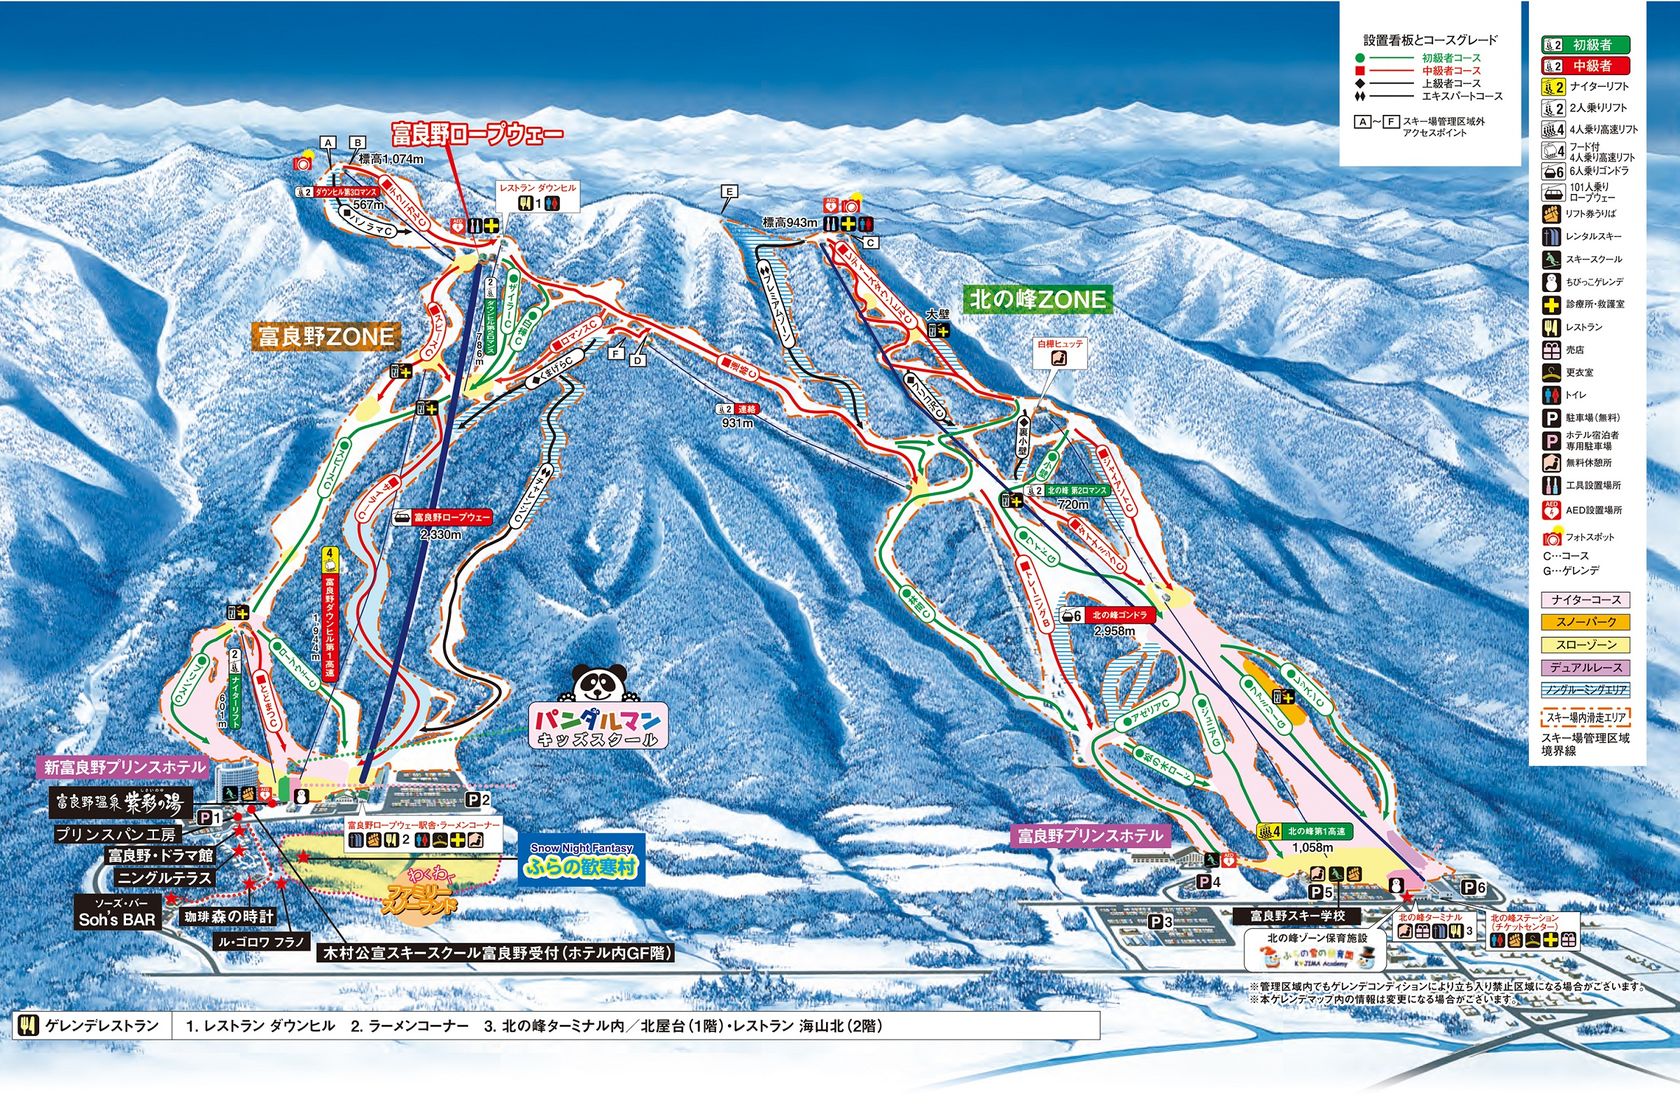 21 富良野スキー場 格安スキーツアー スノーボードツアー 東京発 格安旅行のジェイトリップ